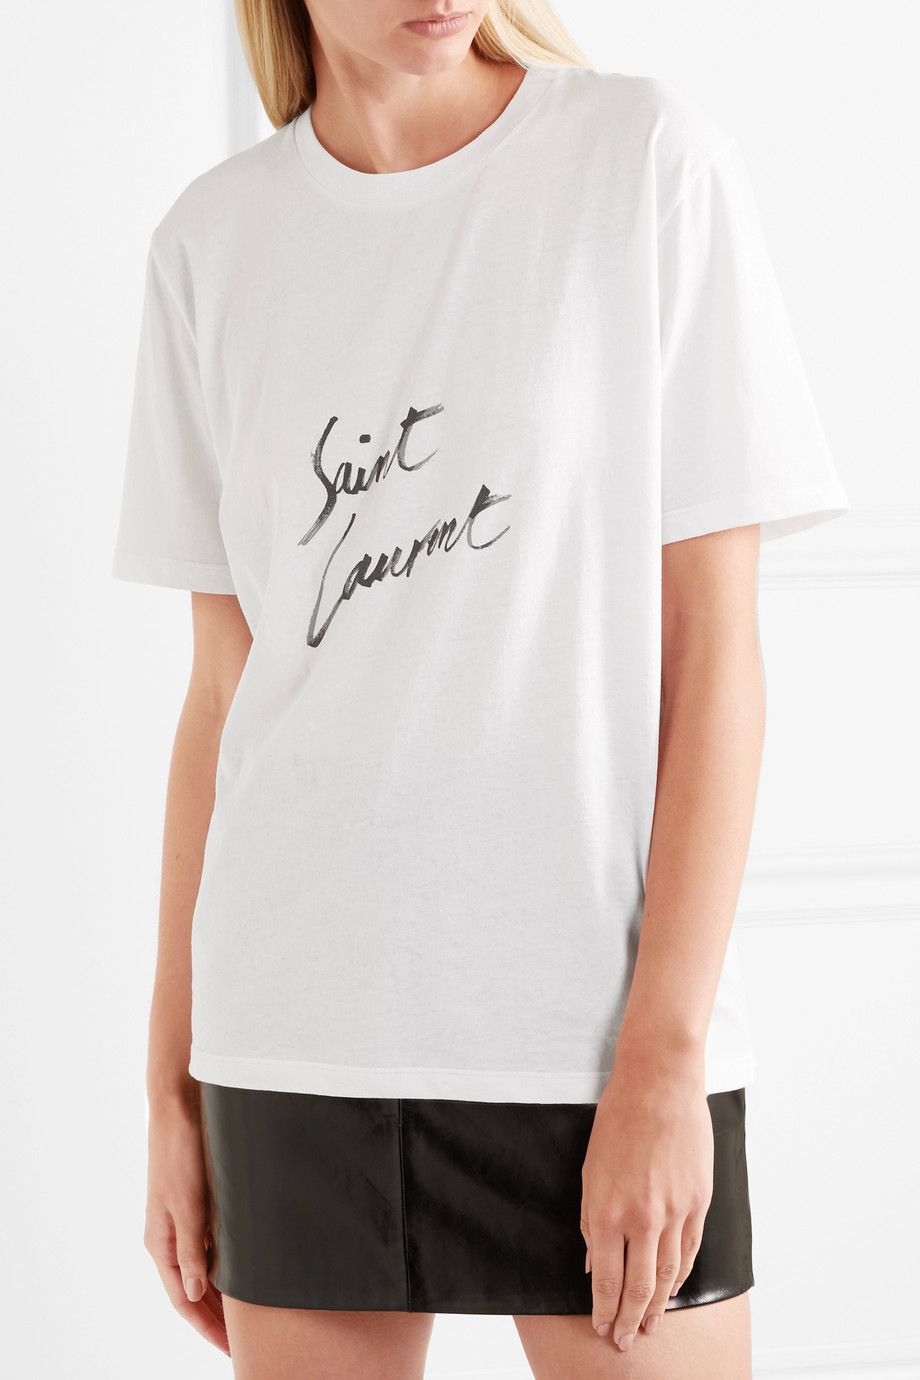 Saint Laurent Printed cotton-jersey T-shirt